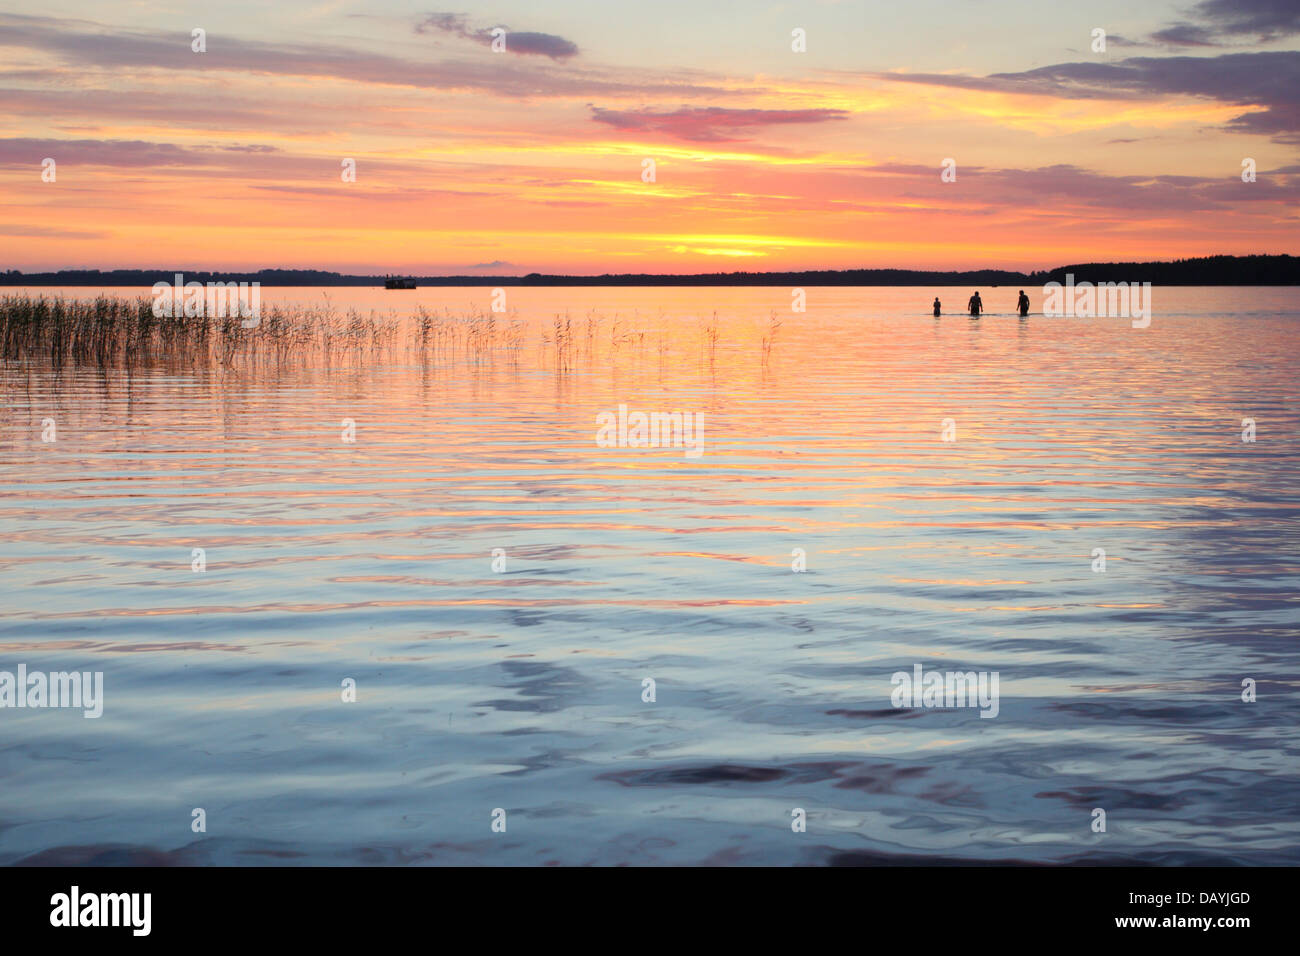 Menschen sind im See Saadjärv in den Sonnenuntergang schwimmen. Estland, Europa Stockfoto